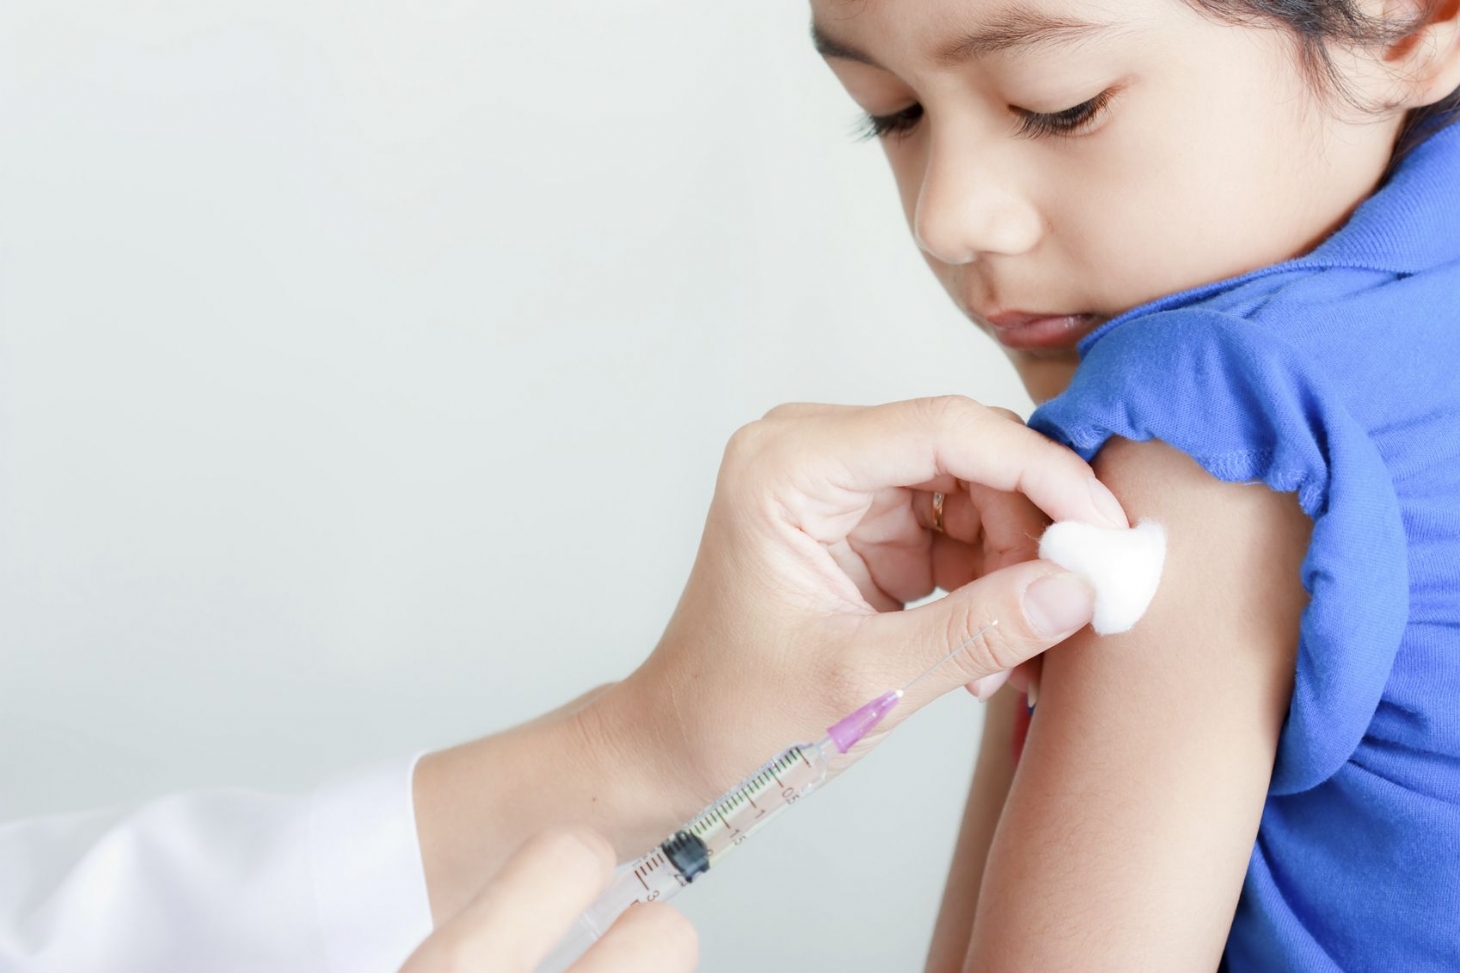 Carteira digital de vacinação é aprovada no Senado | Jornal da Orla